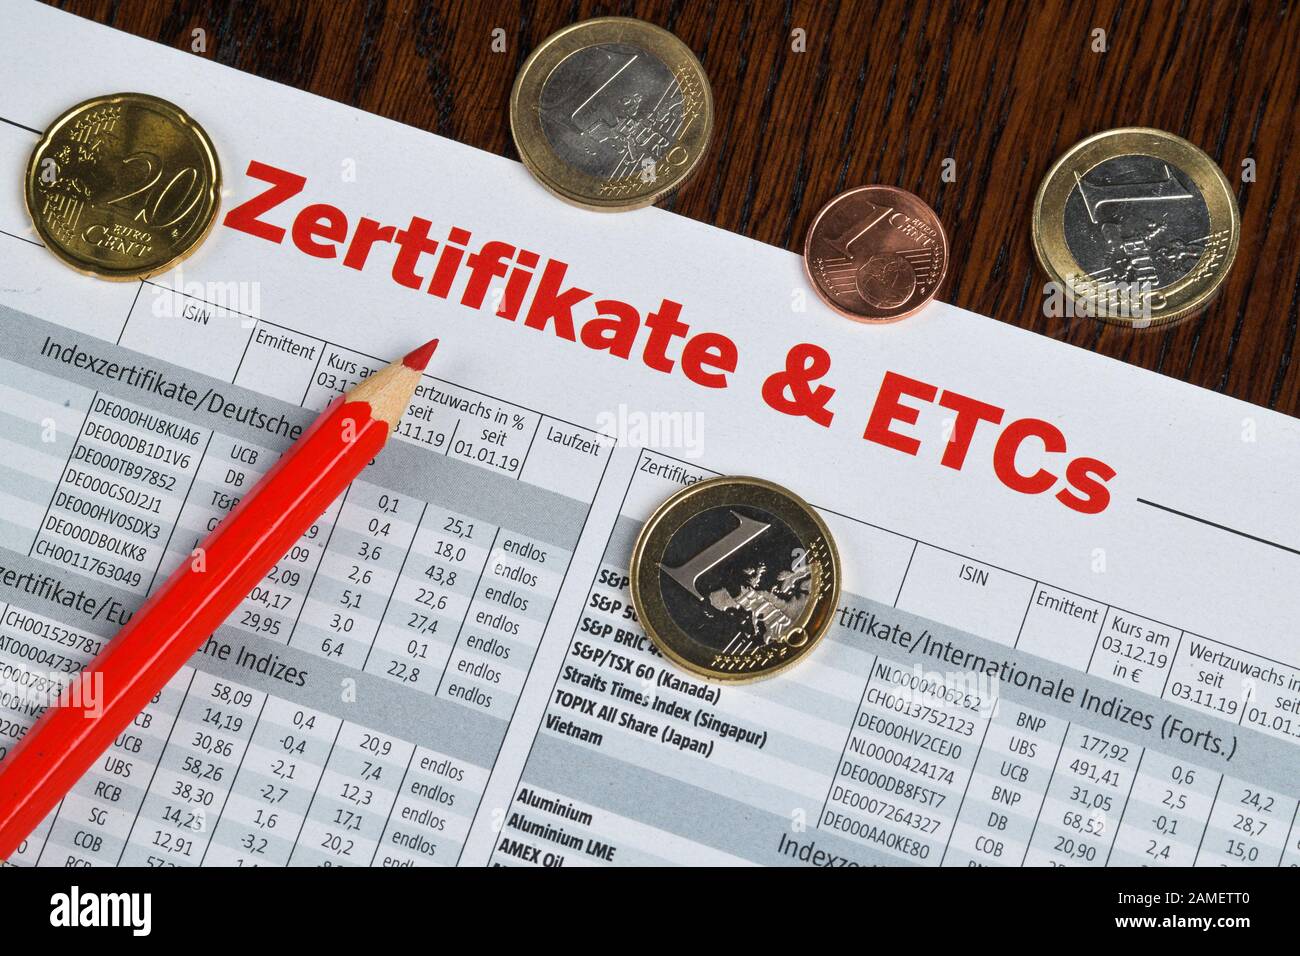 Börseninformation, Zeitung, Zertifikate und ETCs Stock Photo